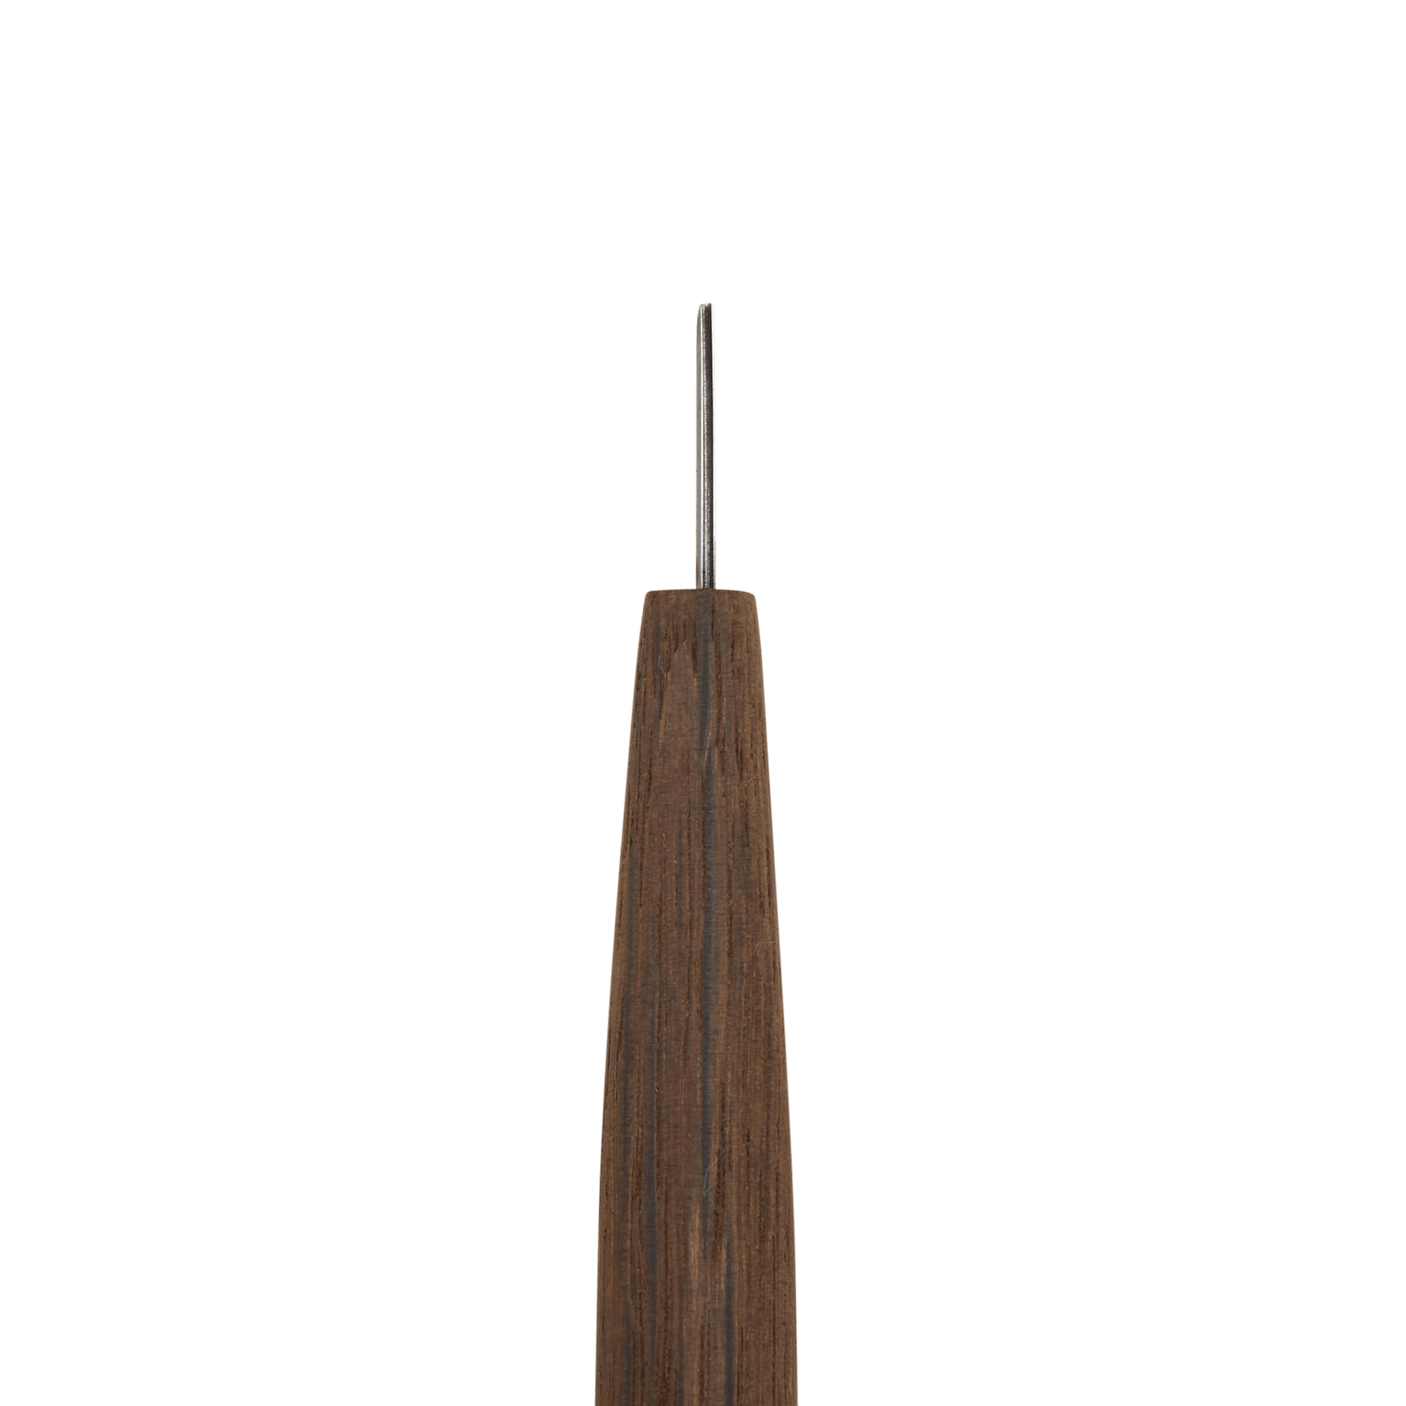 Carving U-Gouge - 0.5mm - Gouges - Japanese Tools Australia